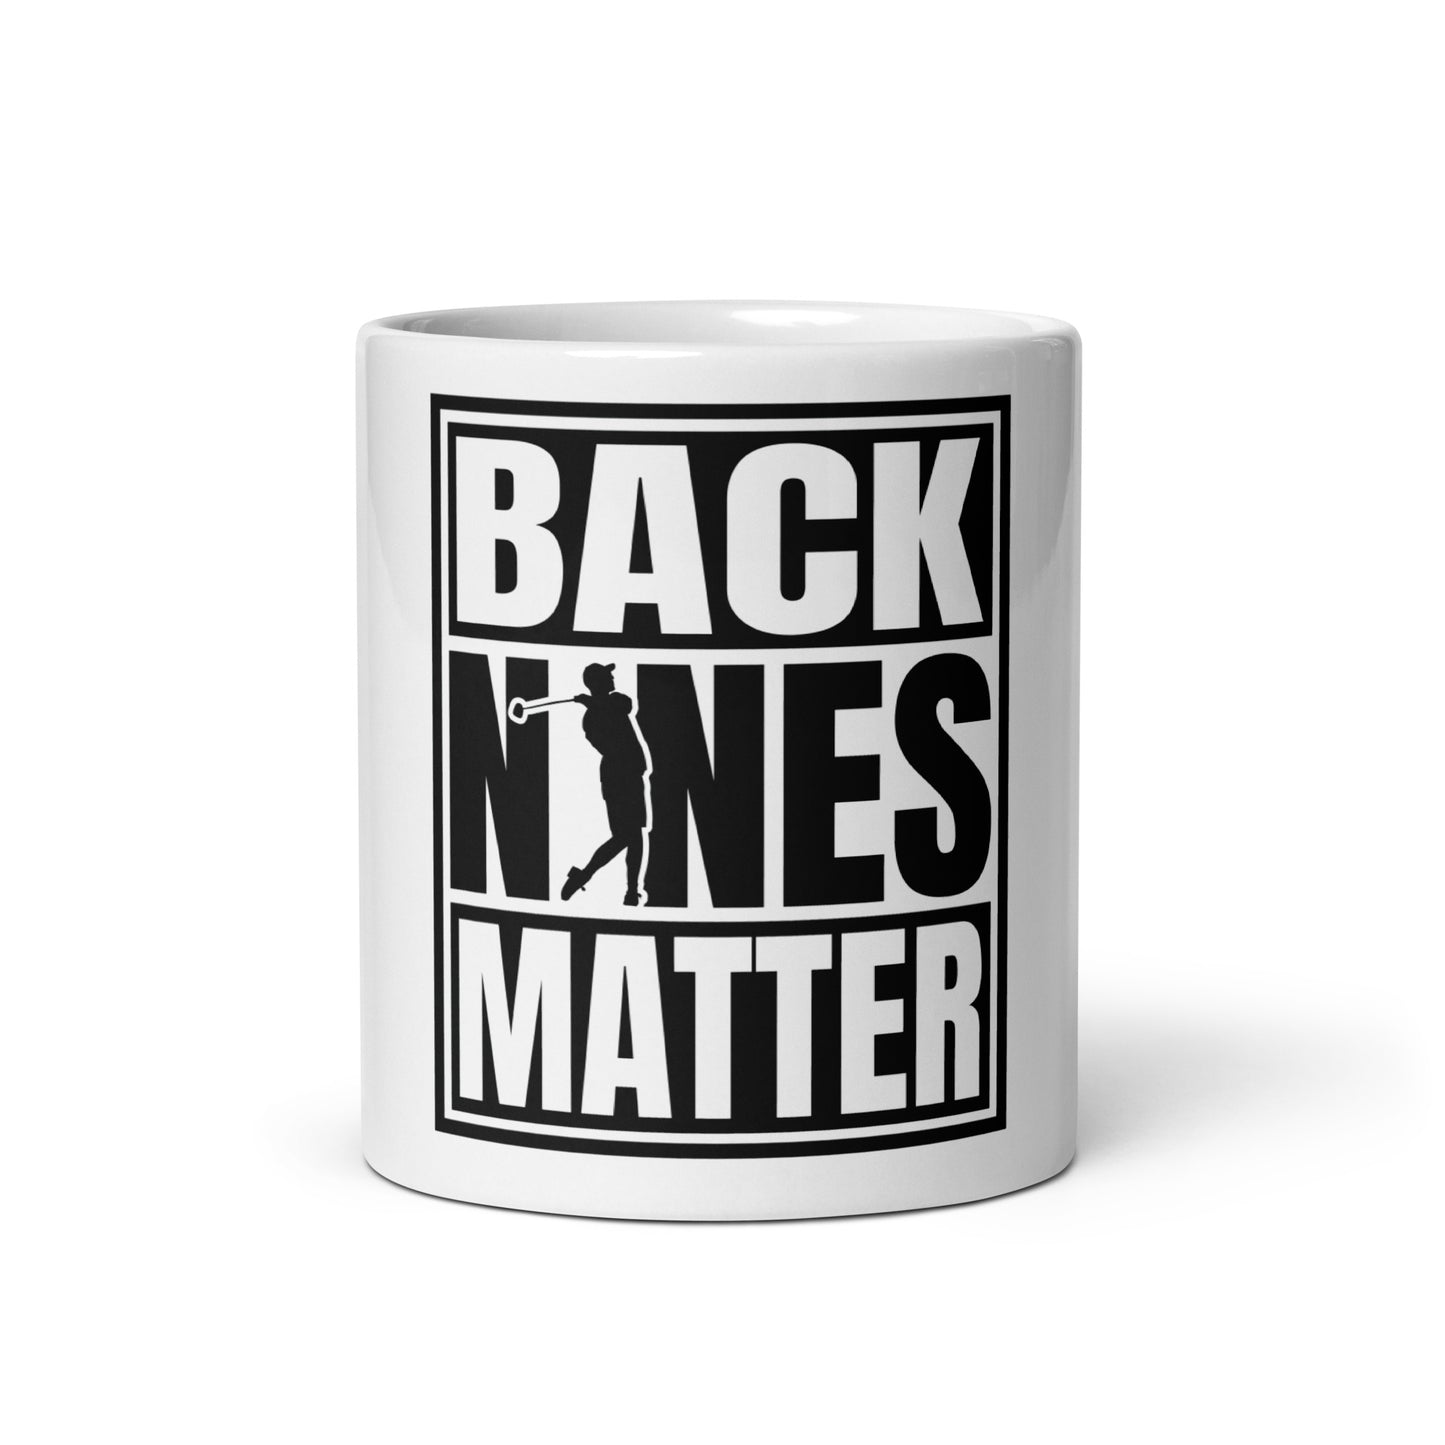 Back Nines Matter White Glossy Mug